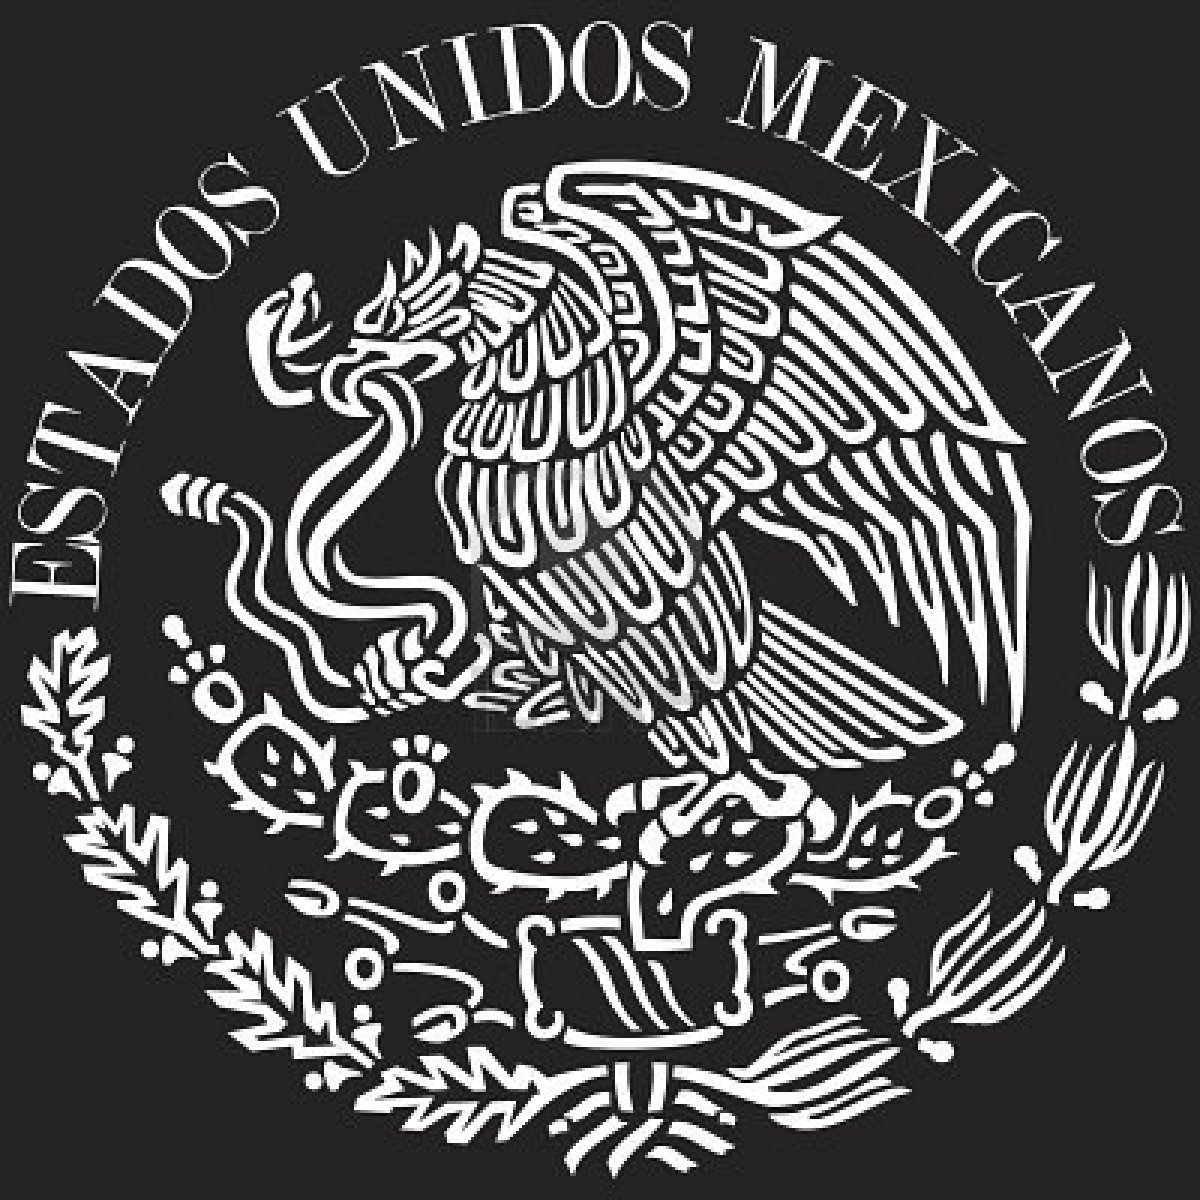 Mexican Flag Logo | Free Images at Clker.com - vector clip art ...